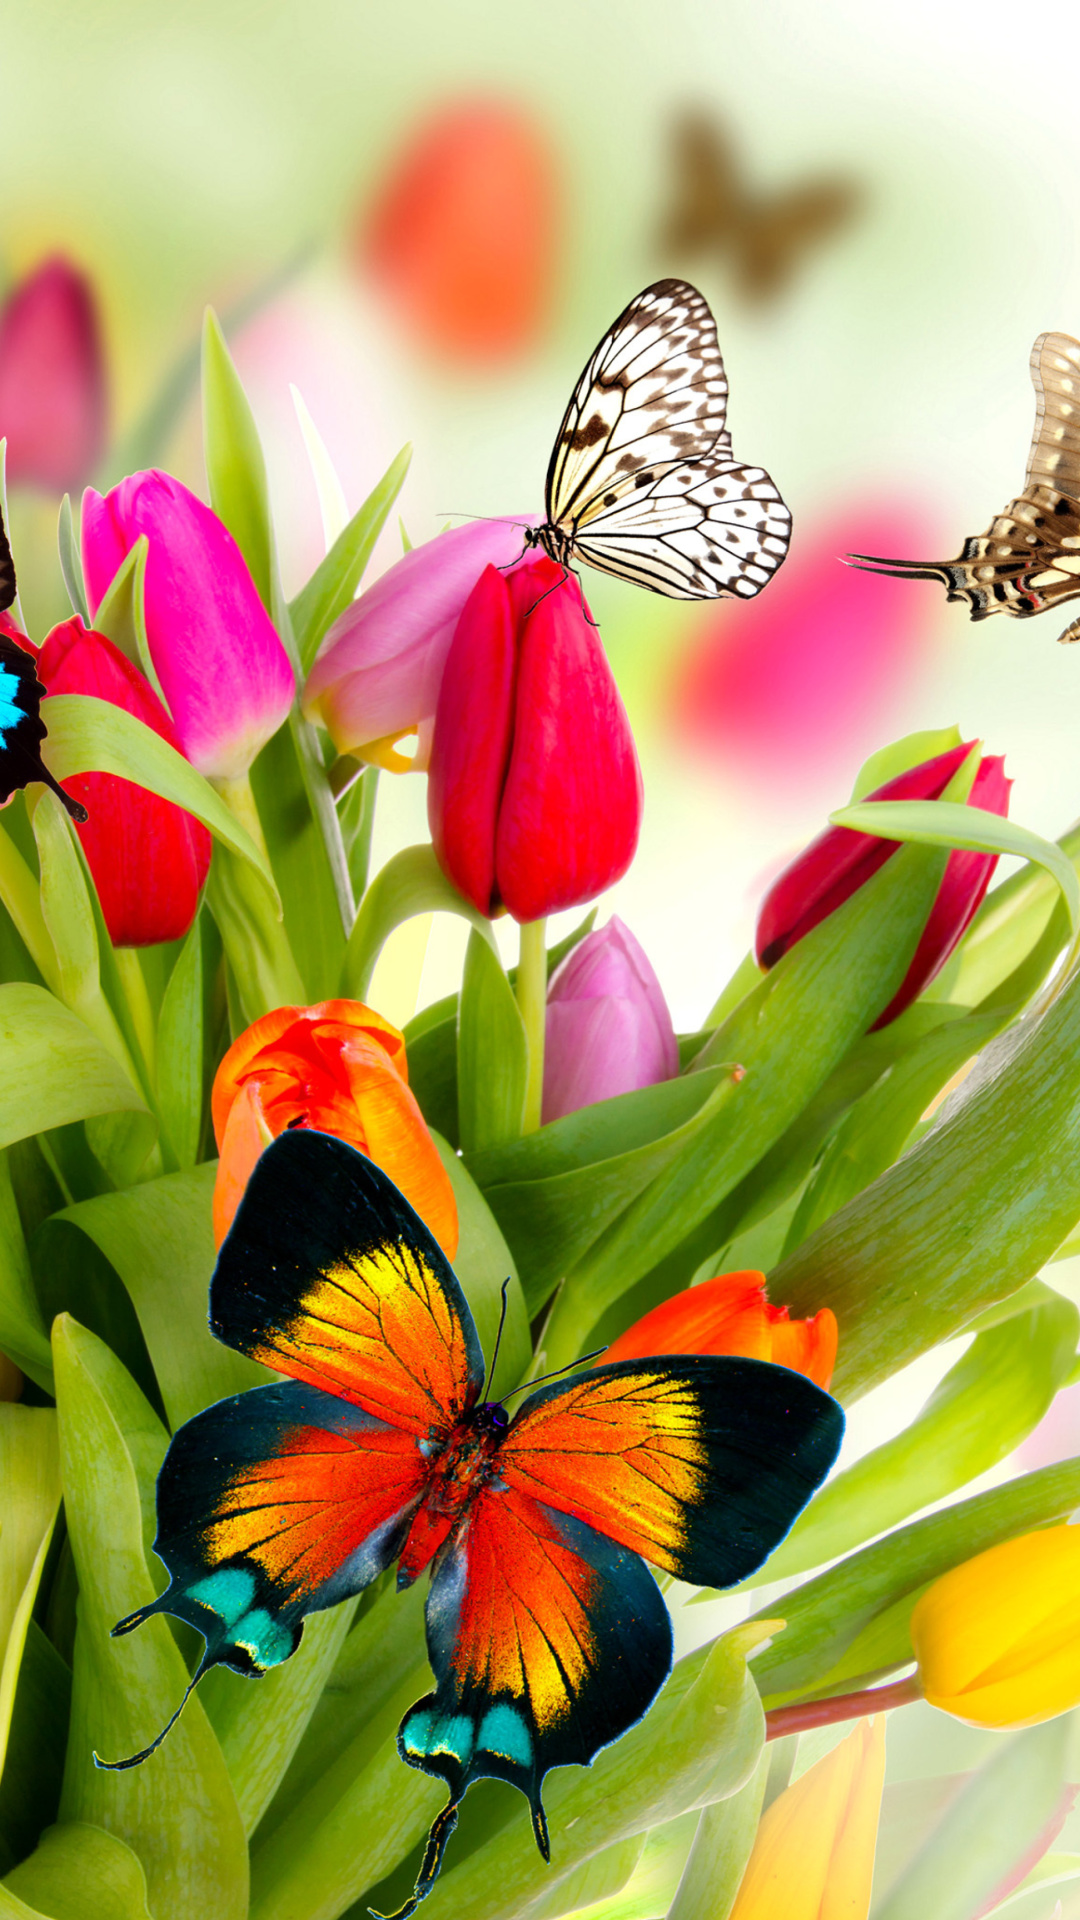 Tulips and Butterflies - Fondos de pantalla gratis para iPhone 7 Plus